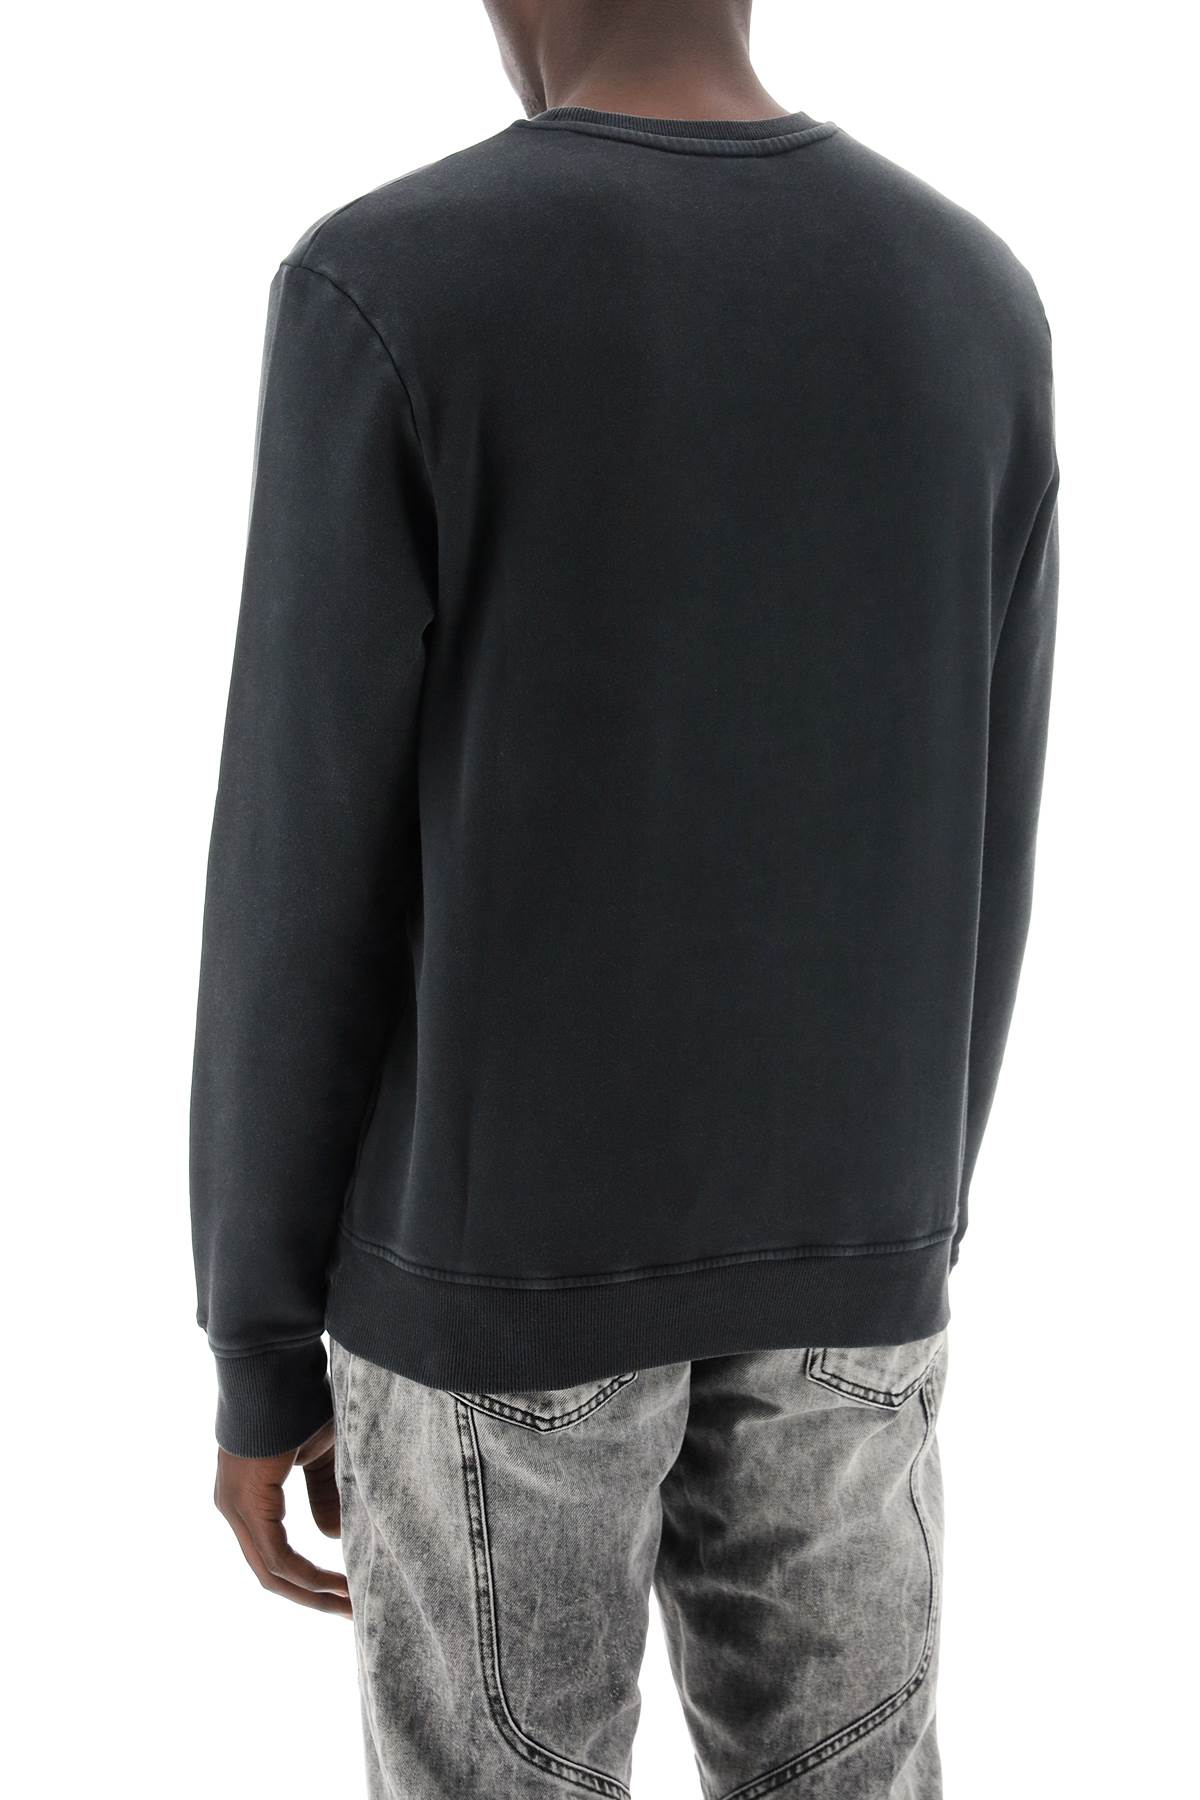 Shop Balmain Vintage Crewneck Sweatshirt For Men In Grey